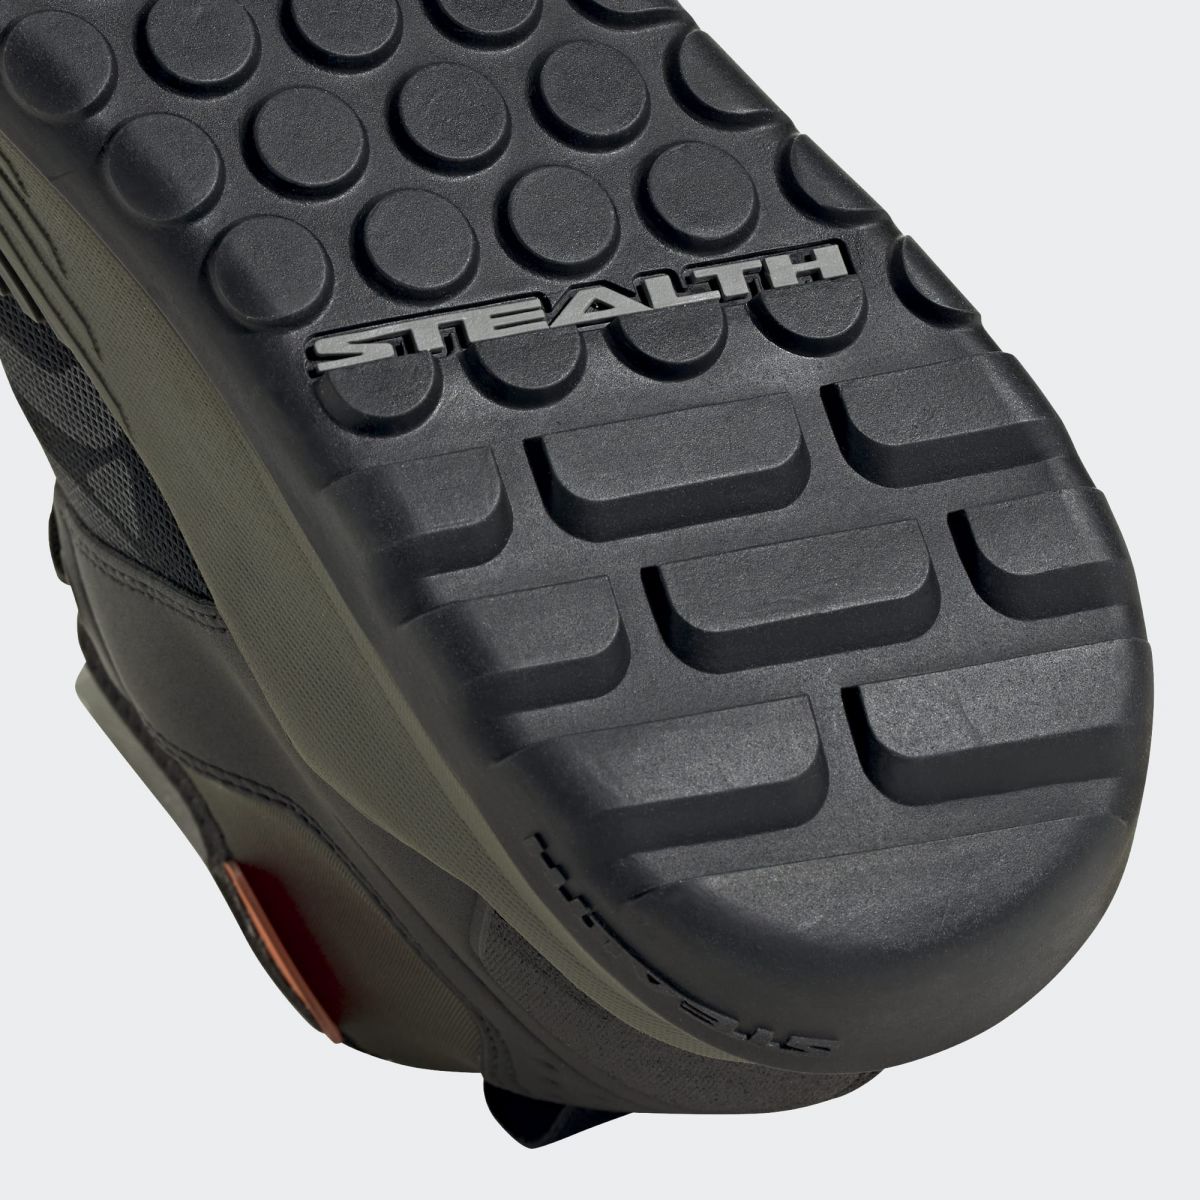 suela reforzada de las Zapatillas para pedales de plataforma de enduro mtb FIVE TEN Trail Cross XT en color verde de bota alta